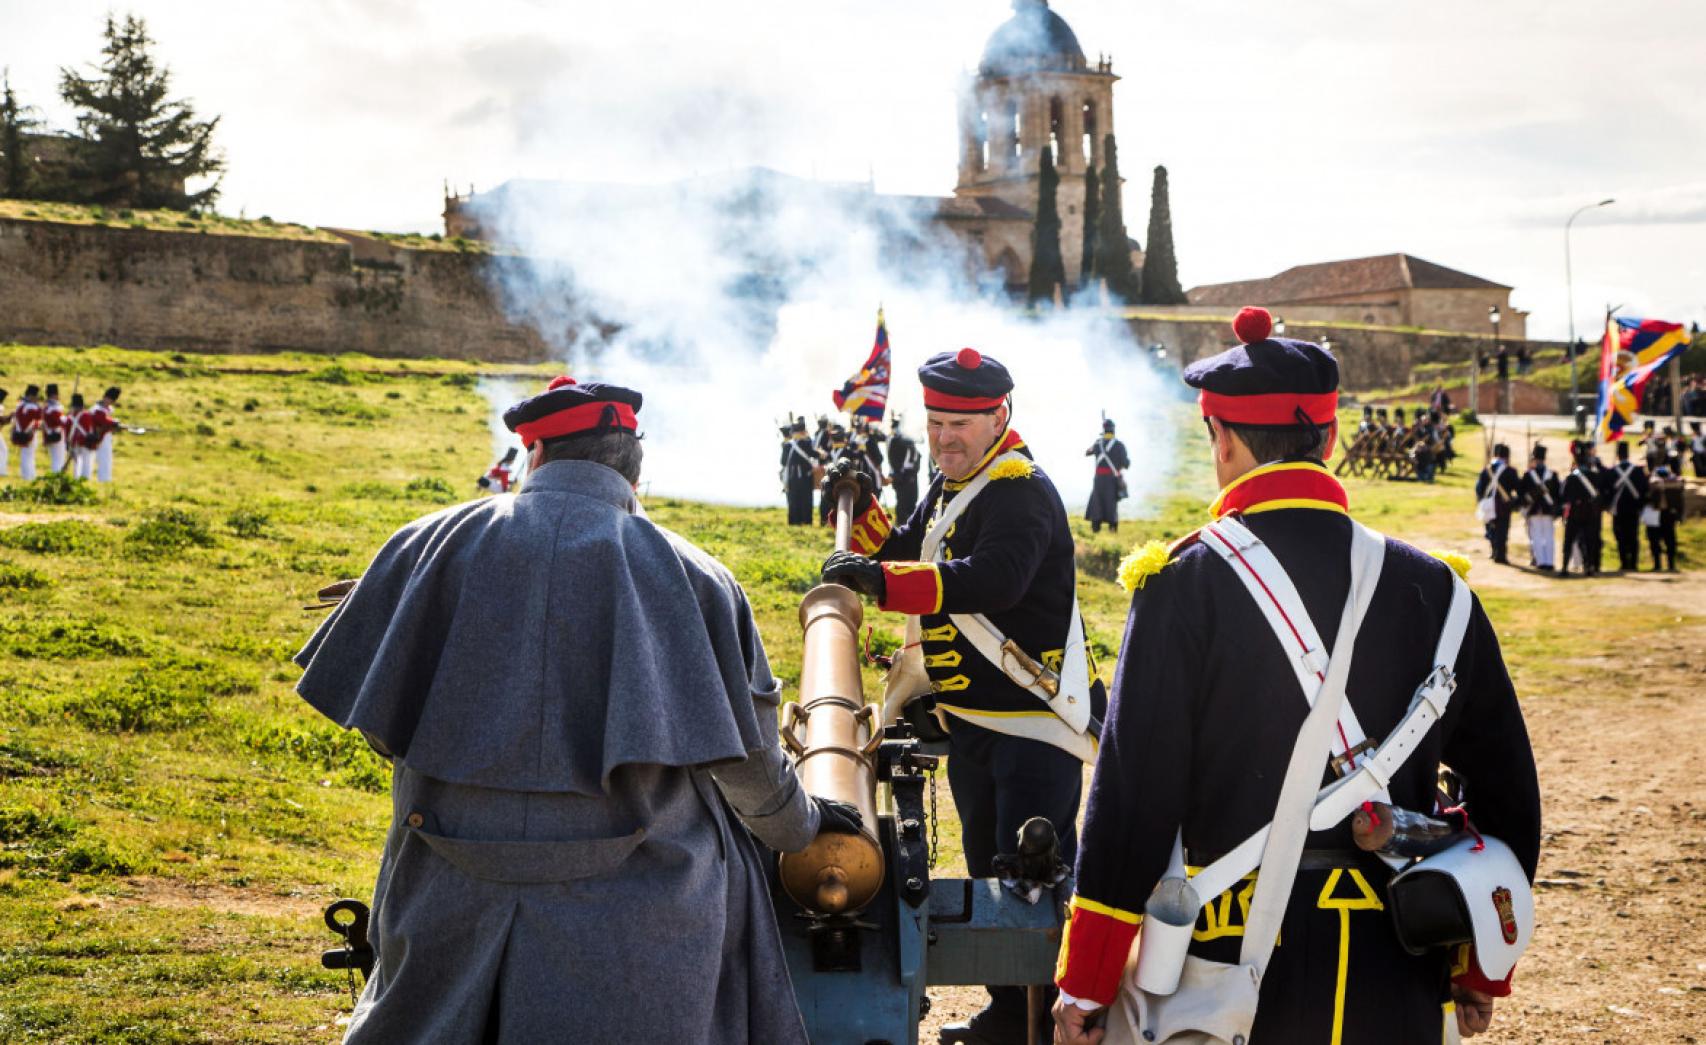 Celebración de la 'Semana Napoleónica' en recuerdo de los sitios de Ciudad Rodrigo